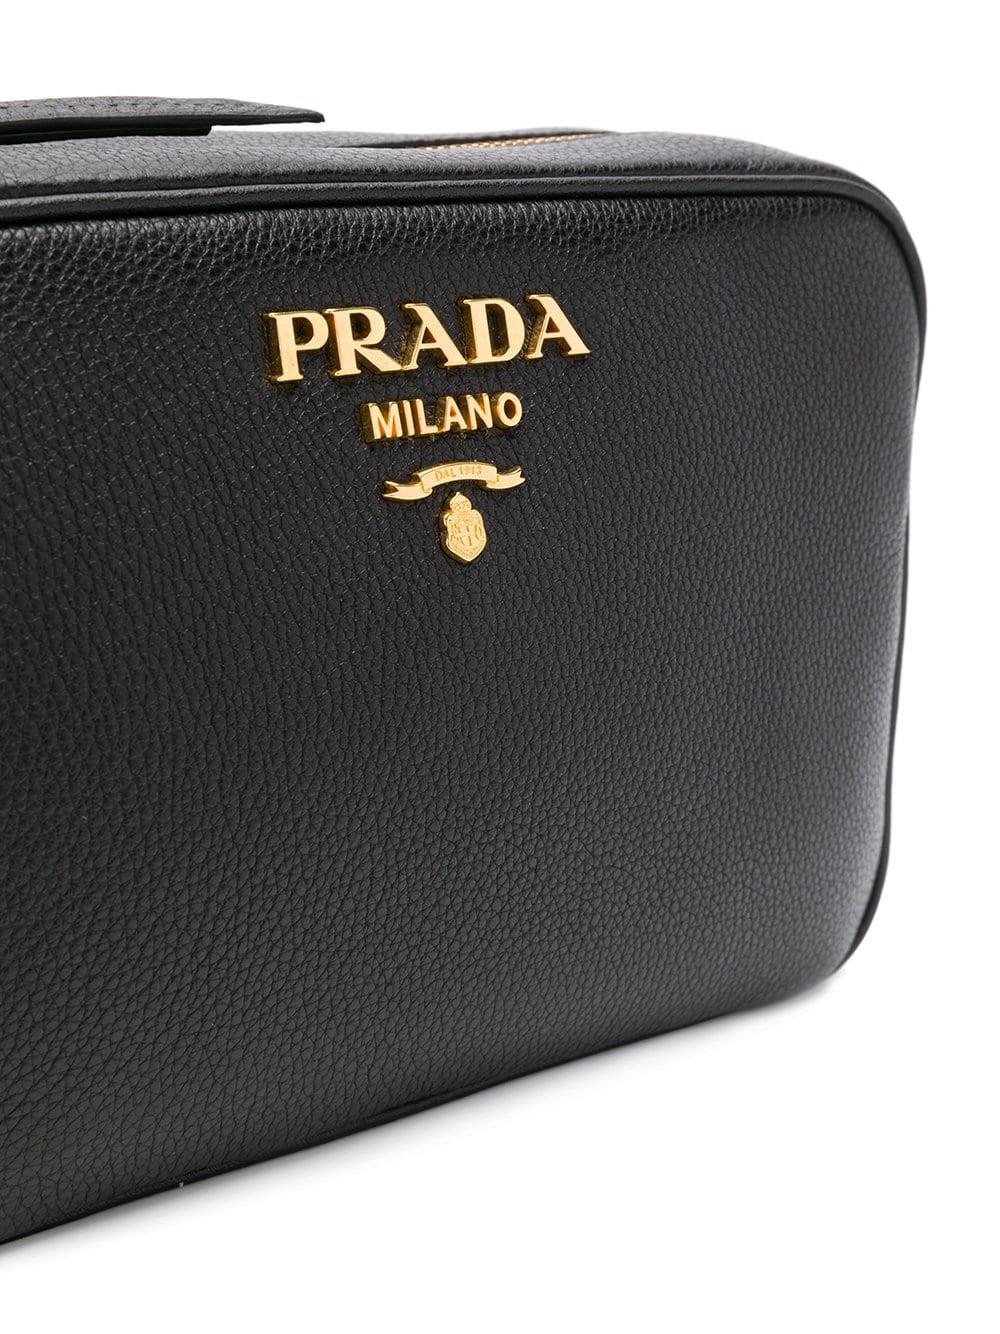 Prada Logo Camera Bag Canvas Small - ShopStyle